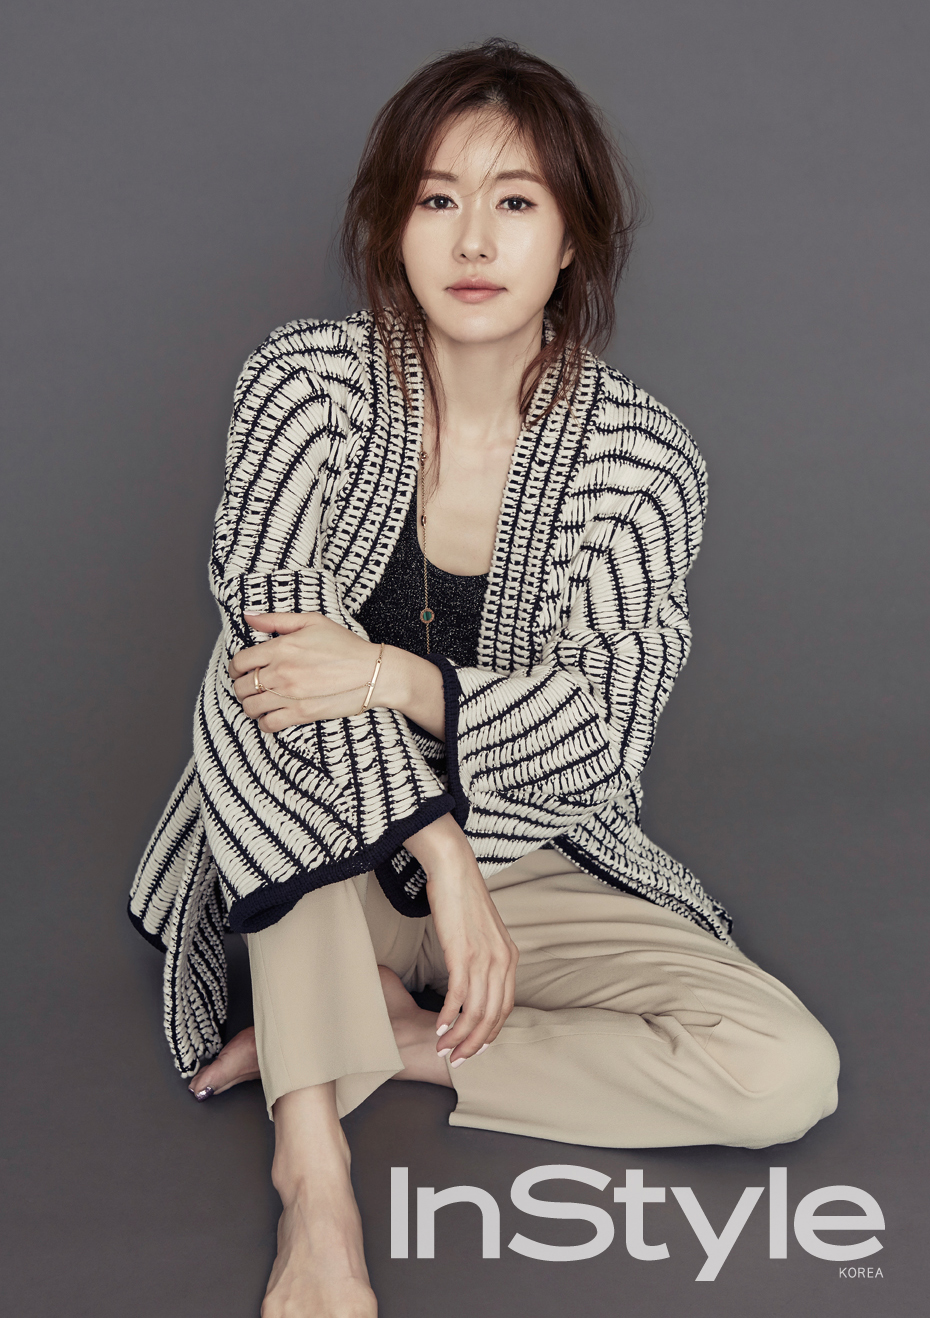 Kim Ji Soo